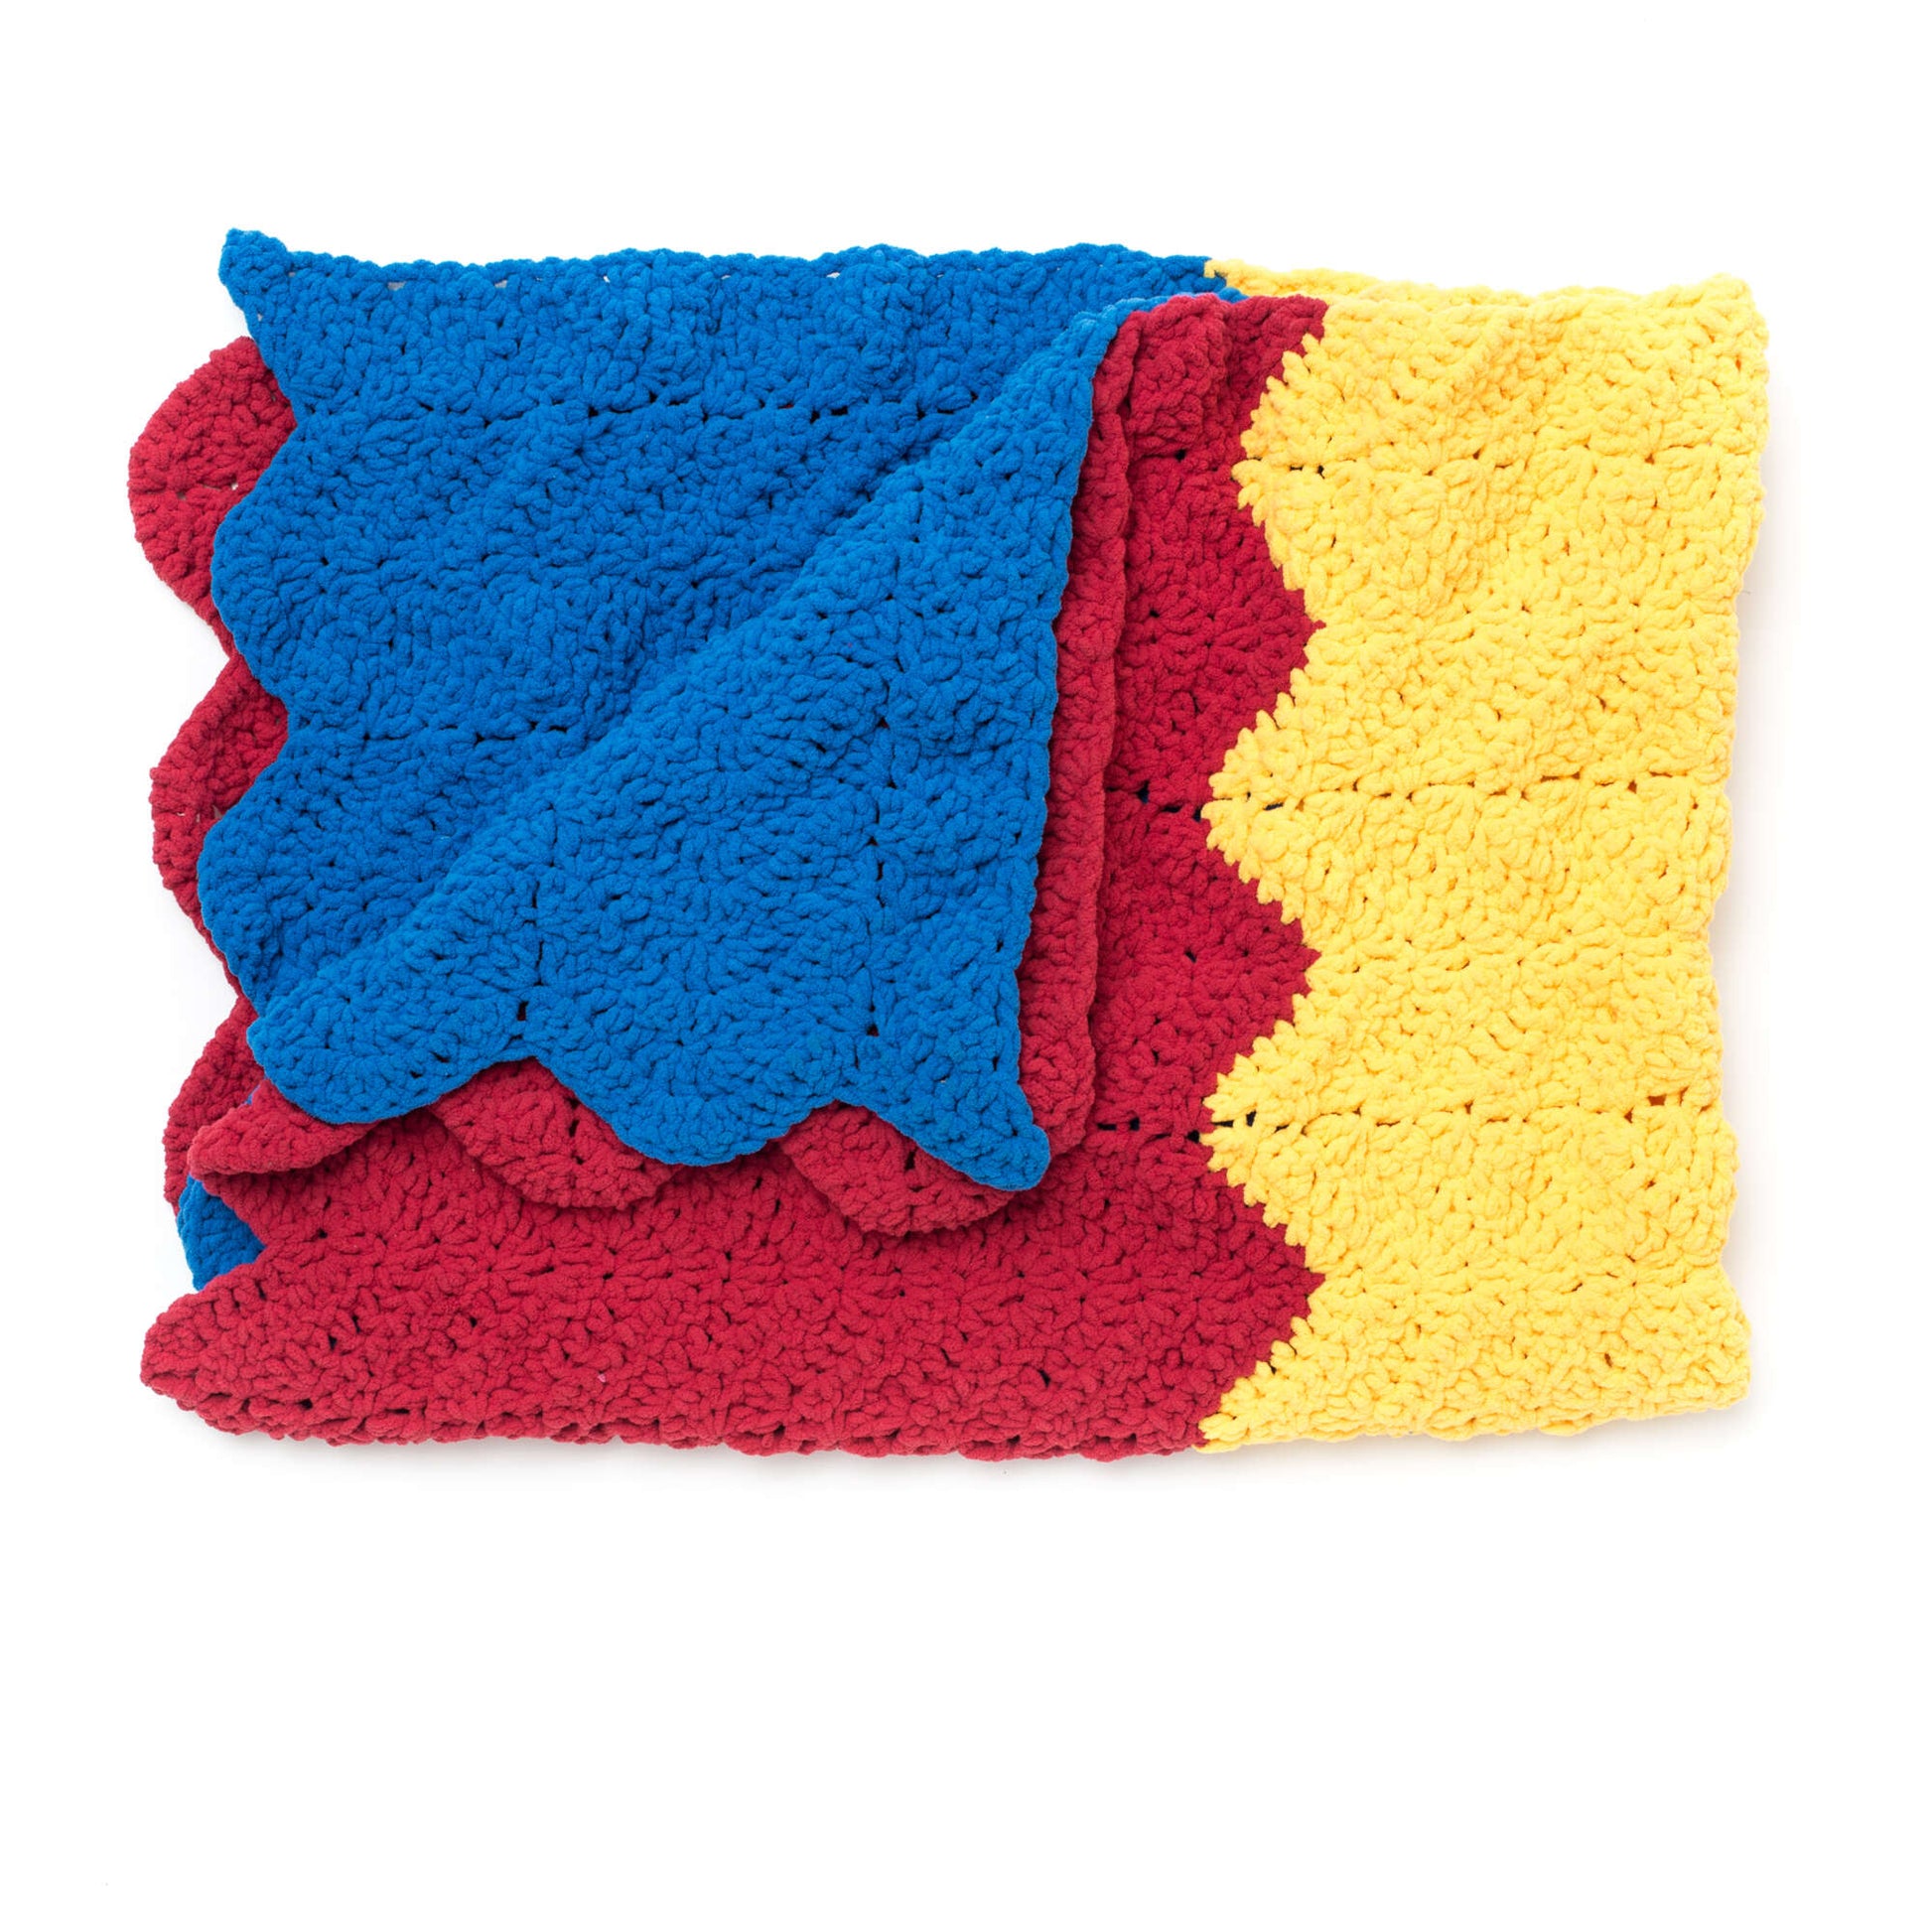 Free Bernat 1-2-3 Crochet Blanket Pattern